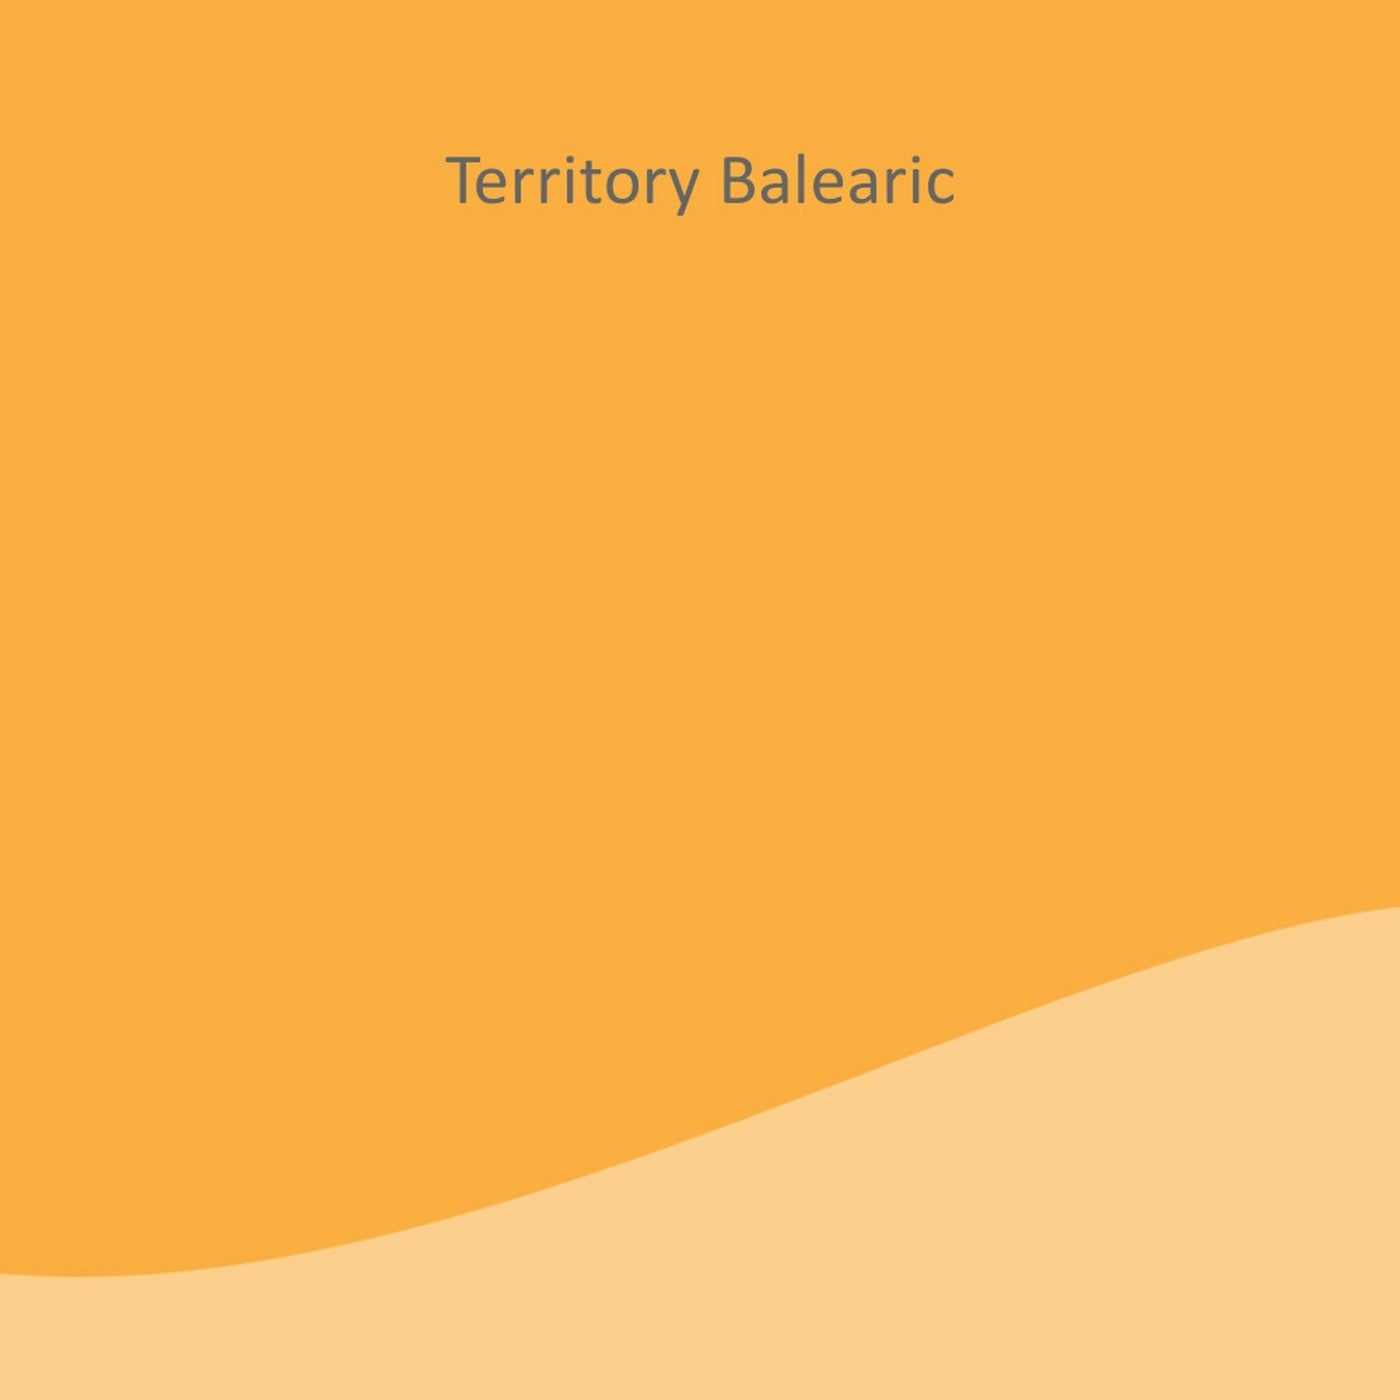 Territory Balearic